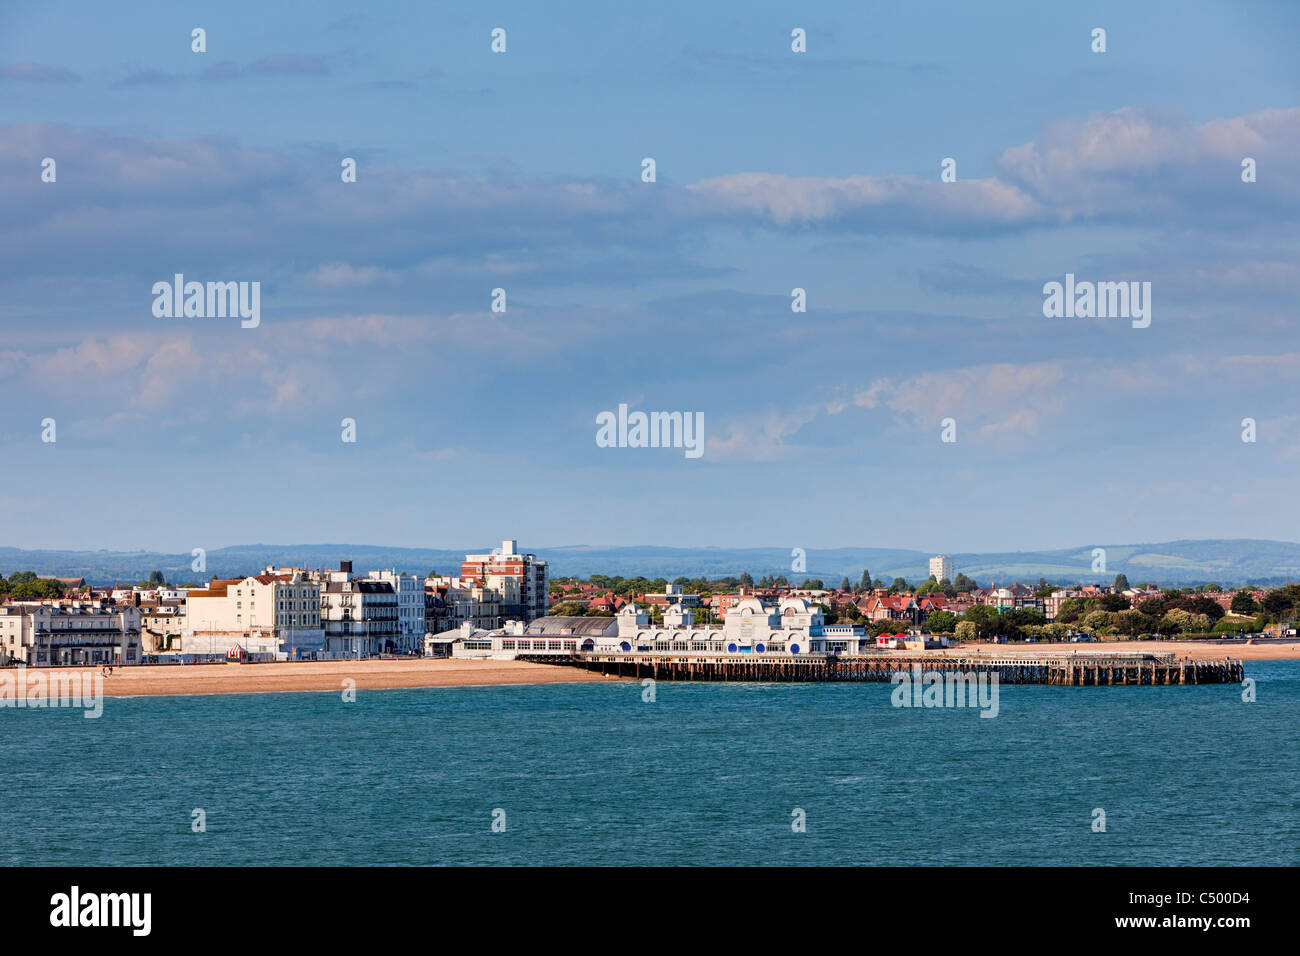 Pier et de la plage de Southsea, Portsmouth, Angleterre, Royaume-Uni Banque D'Images